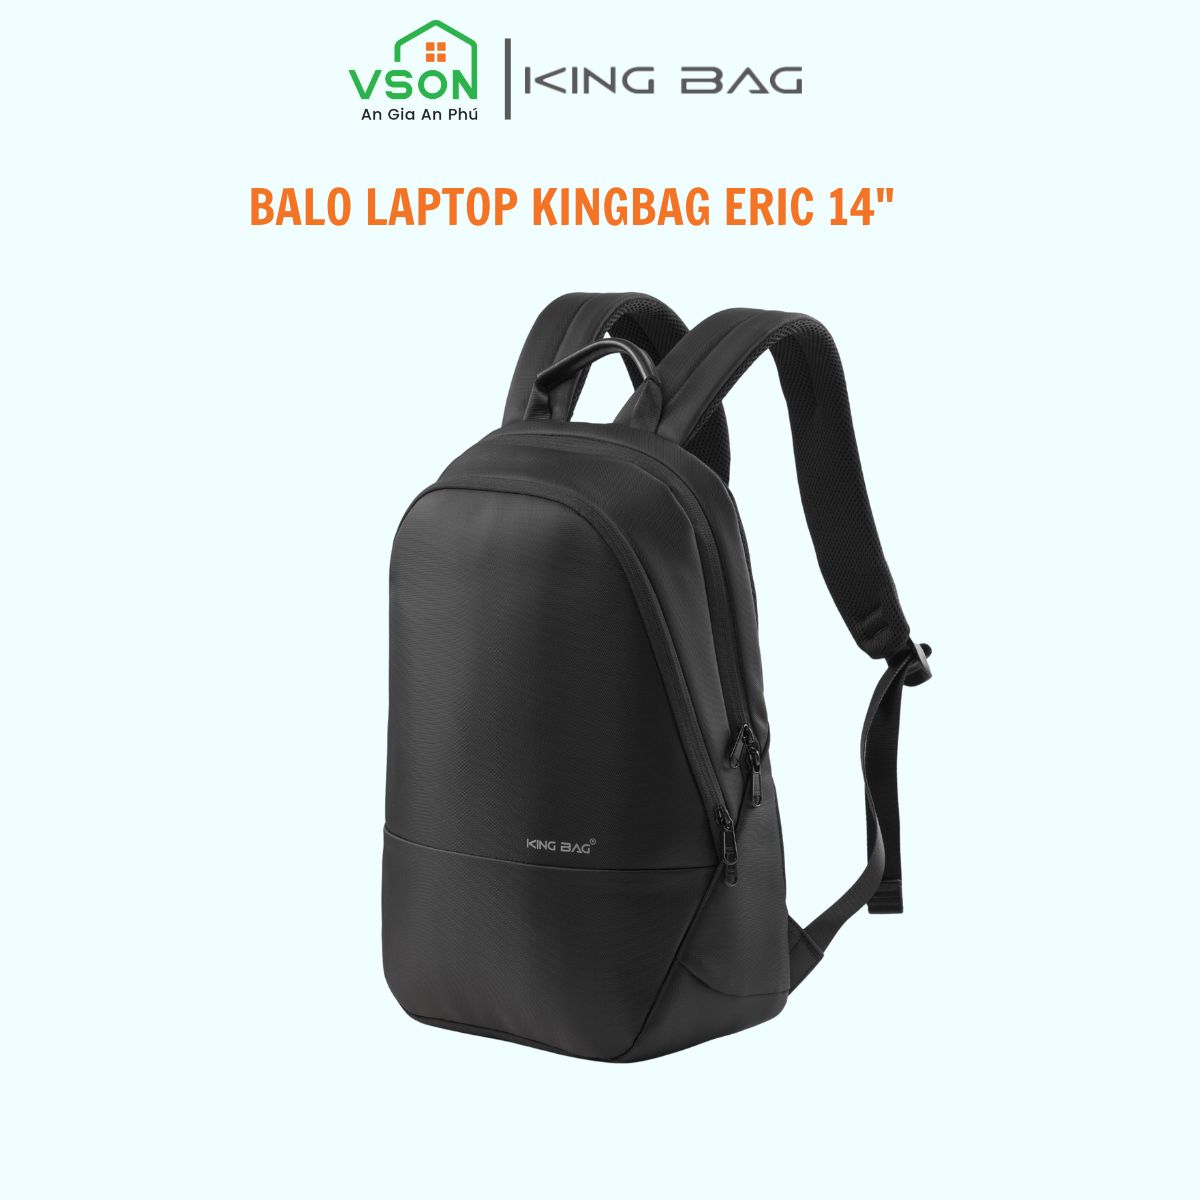 Balo laptop 14” KINGBAG ERIC mỏng nhẹ, phong cách mới, trượt nước, có ngăn máy tính bảng, đai vali tiện dụng - Hàng chính hãng